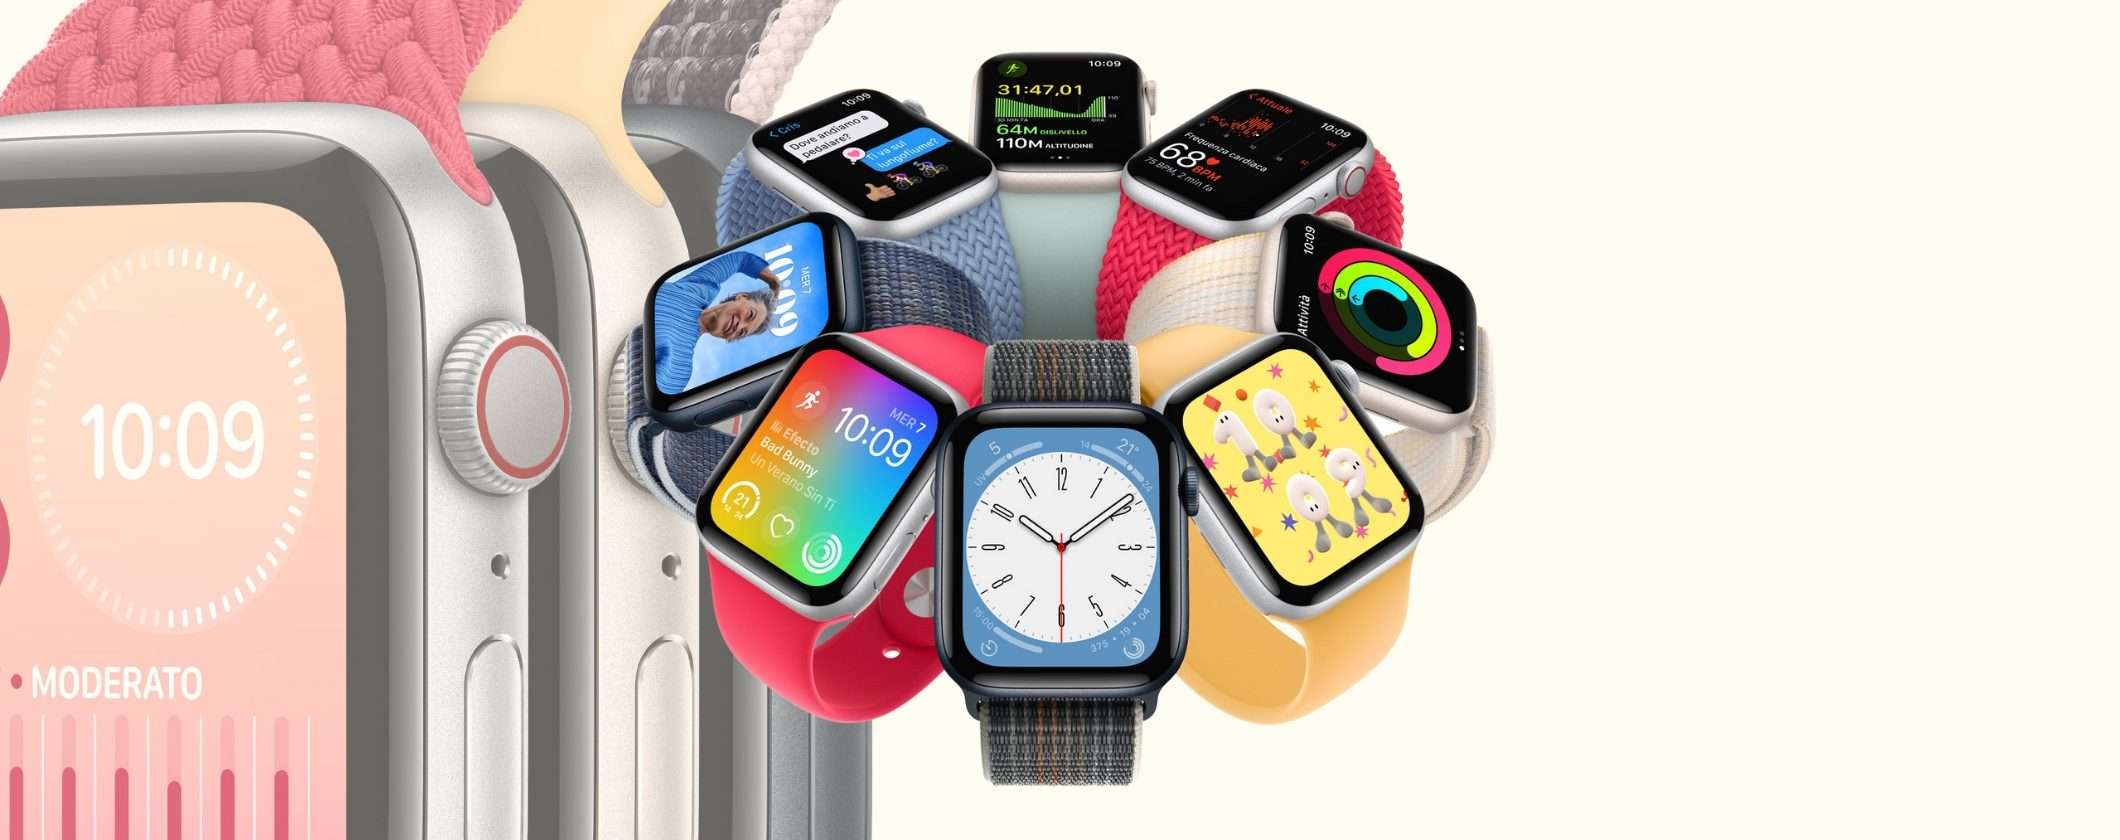 Apple Watch SE a un prezzo SUPER BOMBA: è il Single's Day di Amazon